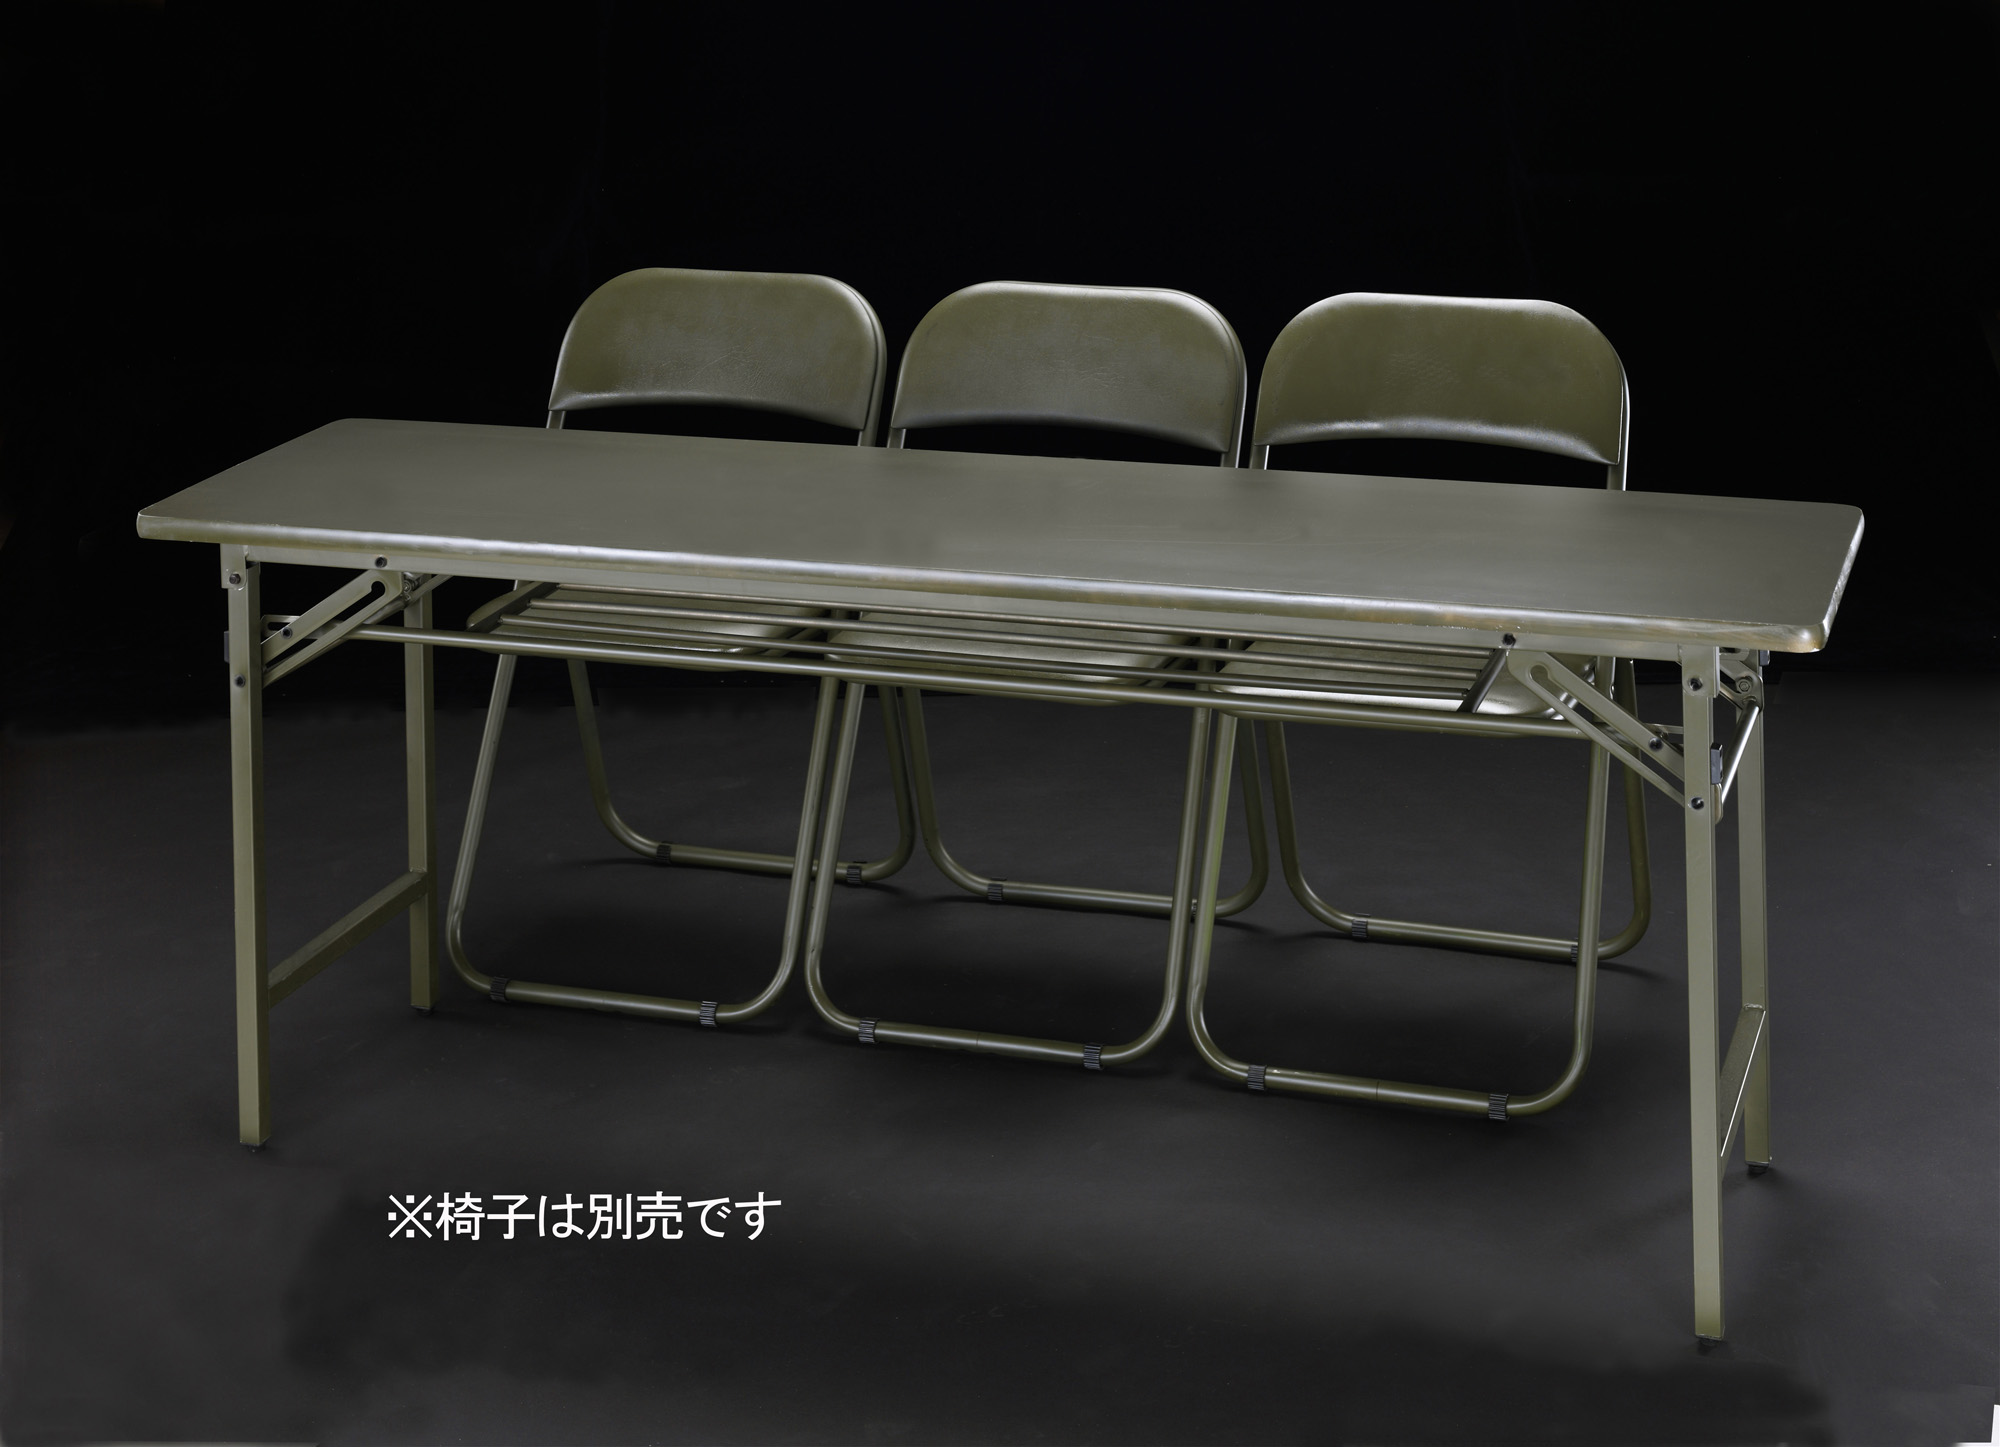 EA954E-36｜1800x450x700mm 作業テーブル(OD色)のページ -